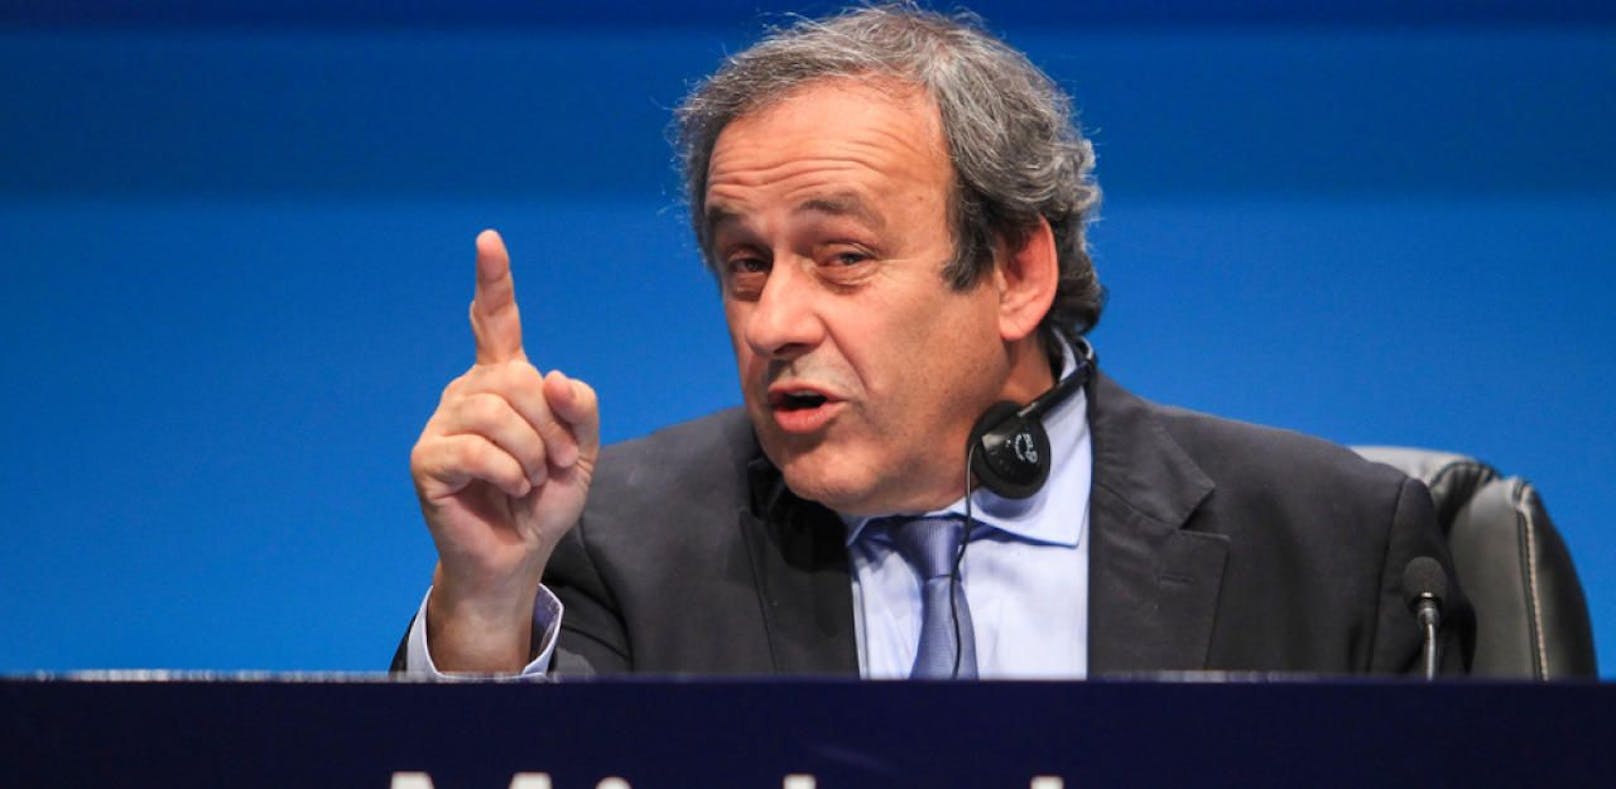 UEFA-Präsident Michel Platini